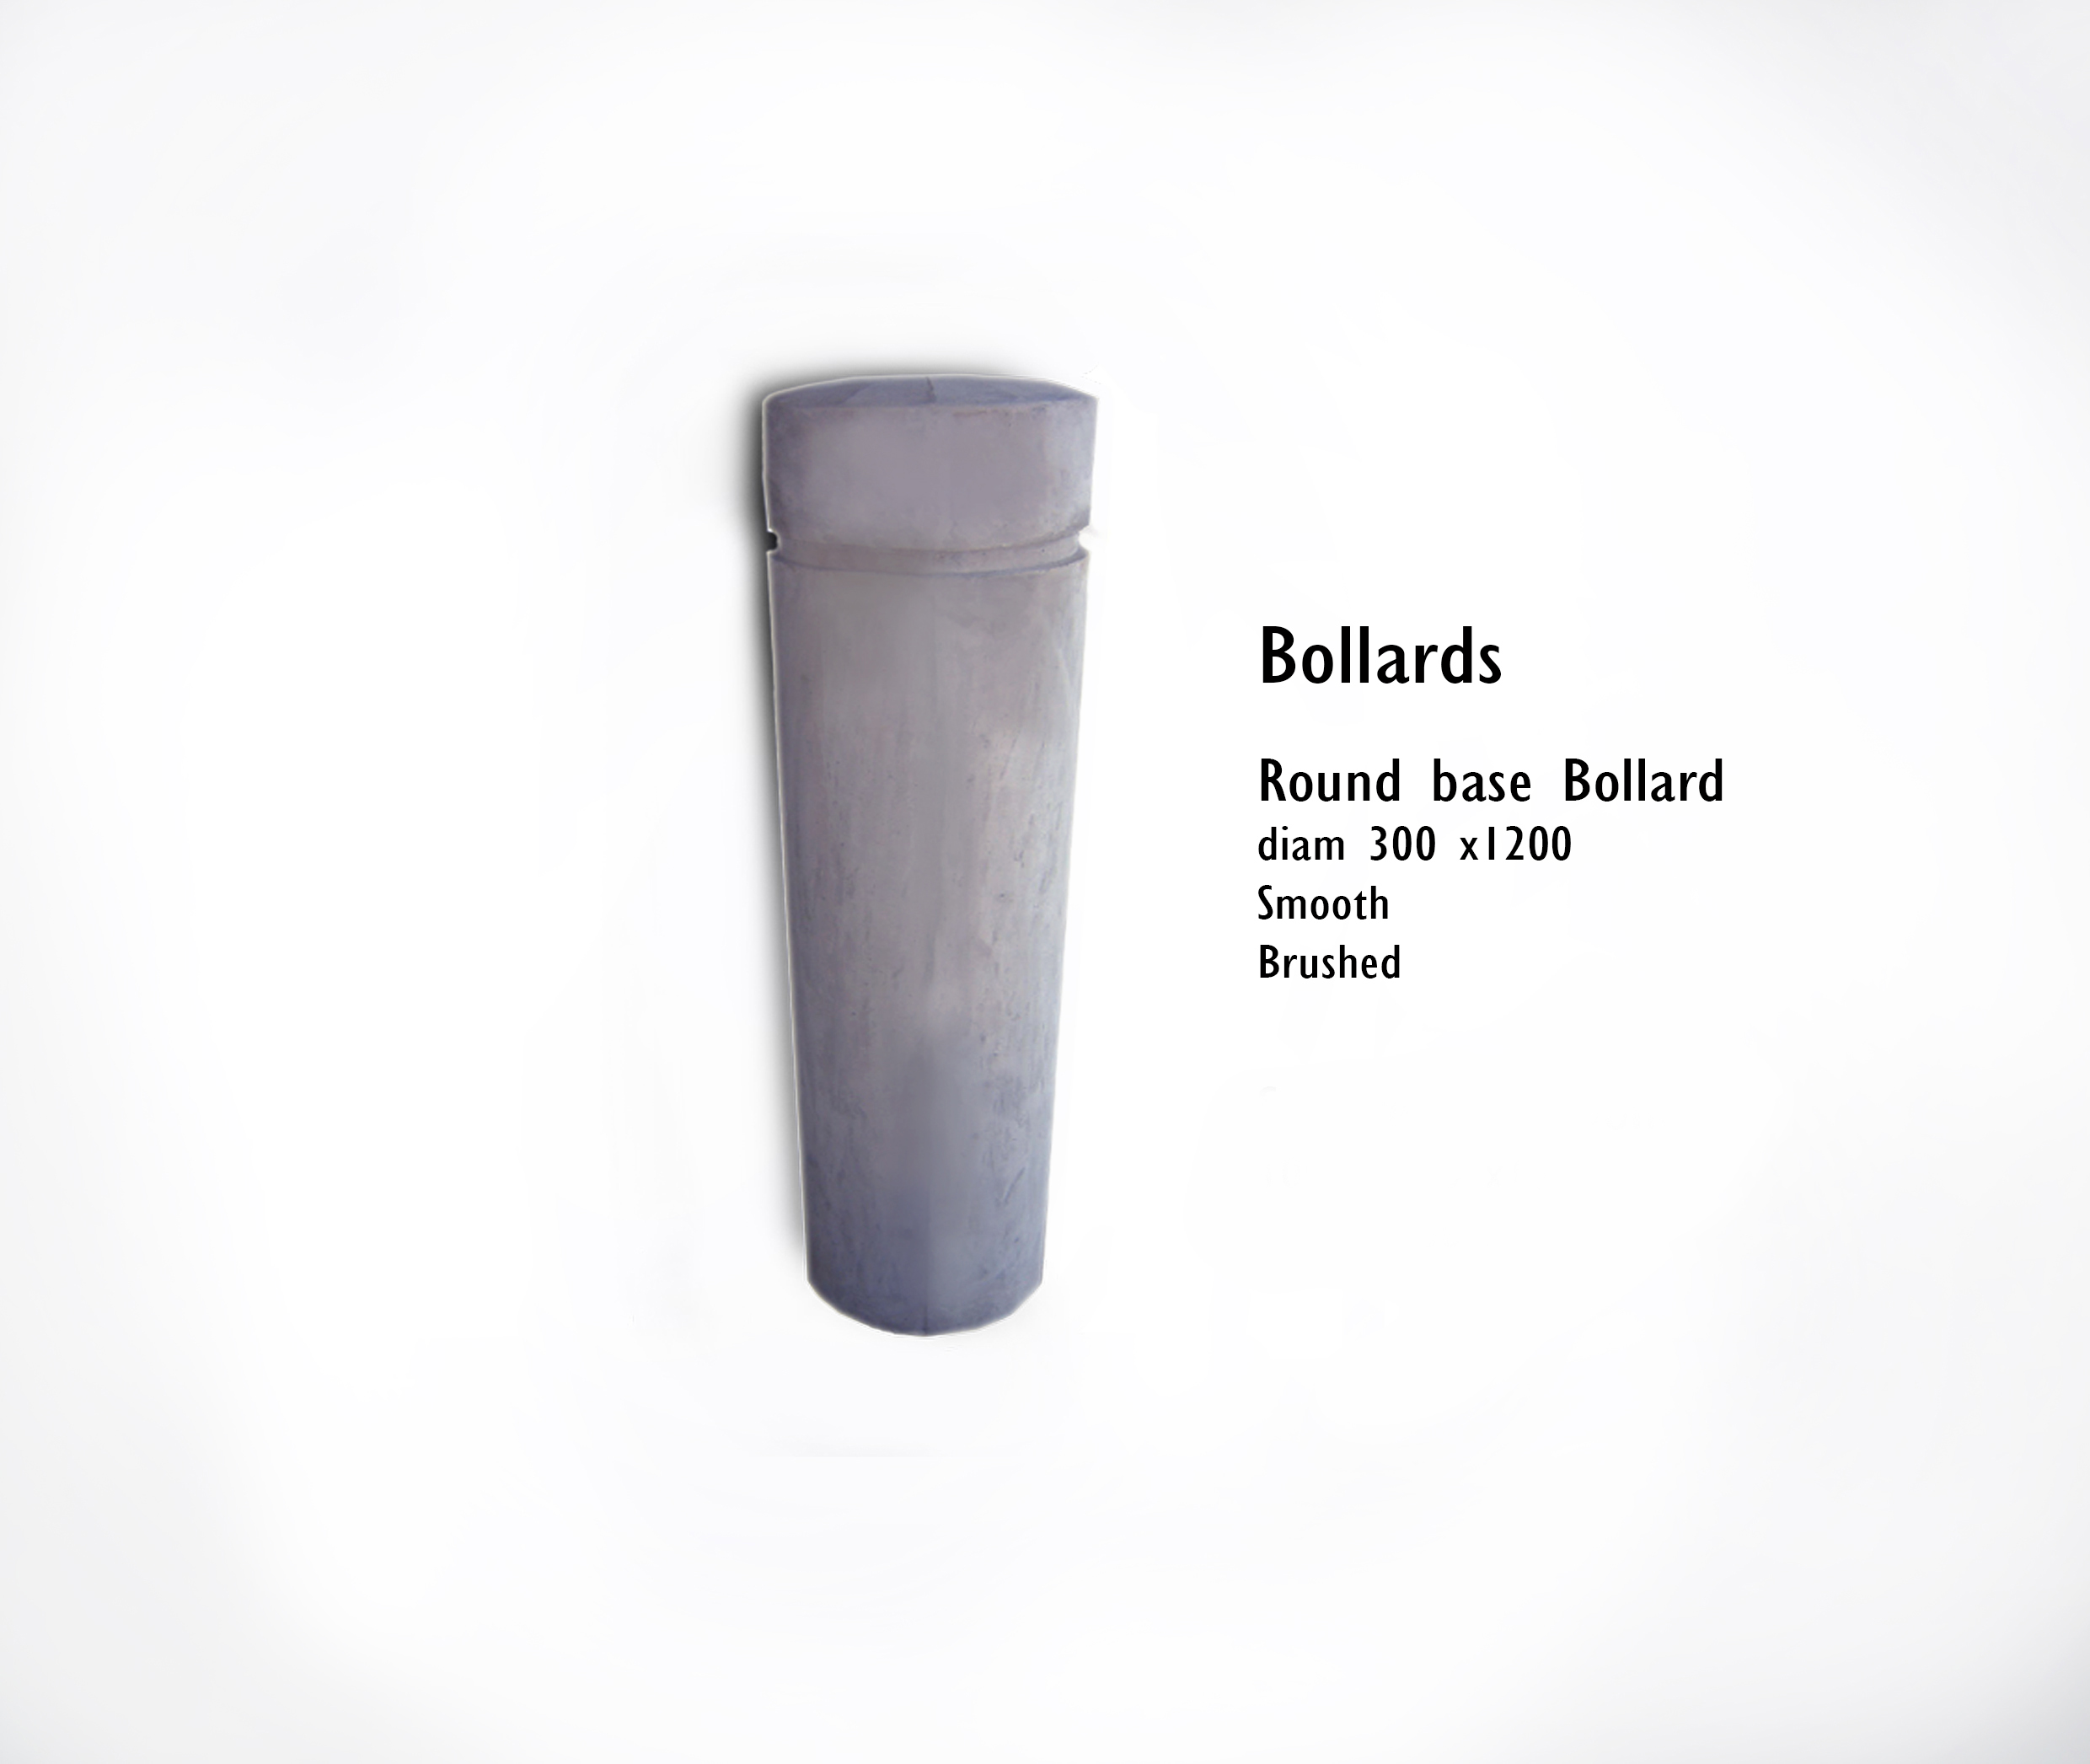 Bollards round